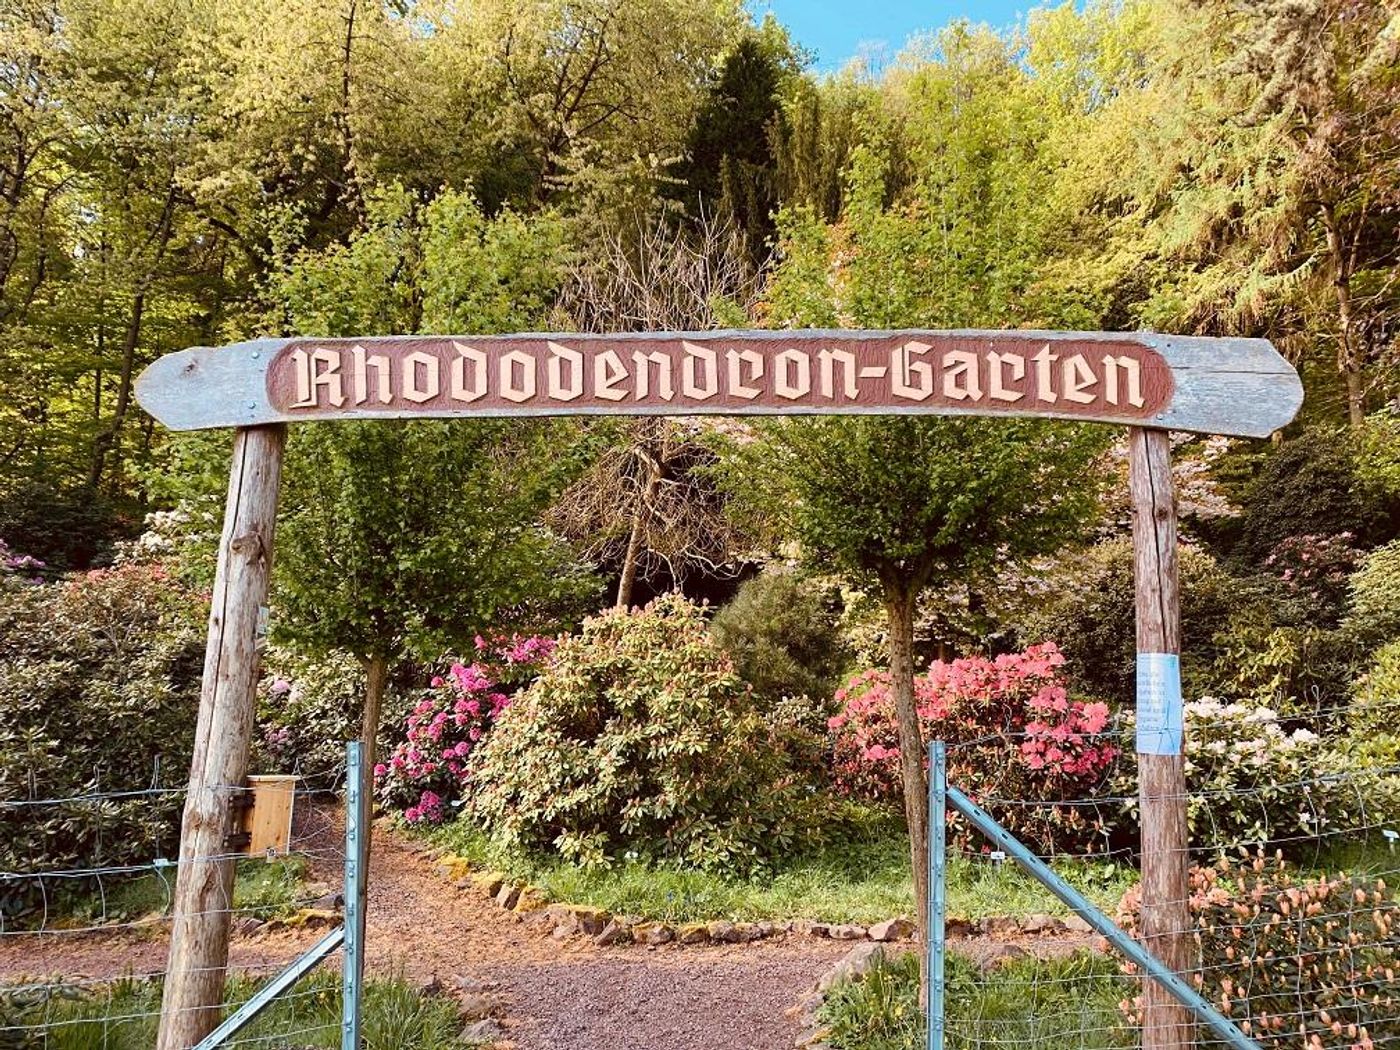 Rhododendron-Garten Bad Tabarz